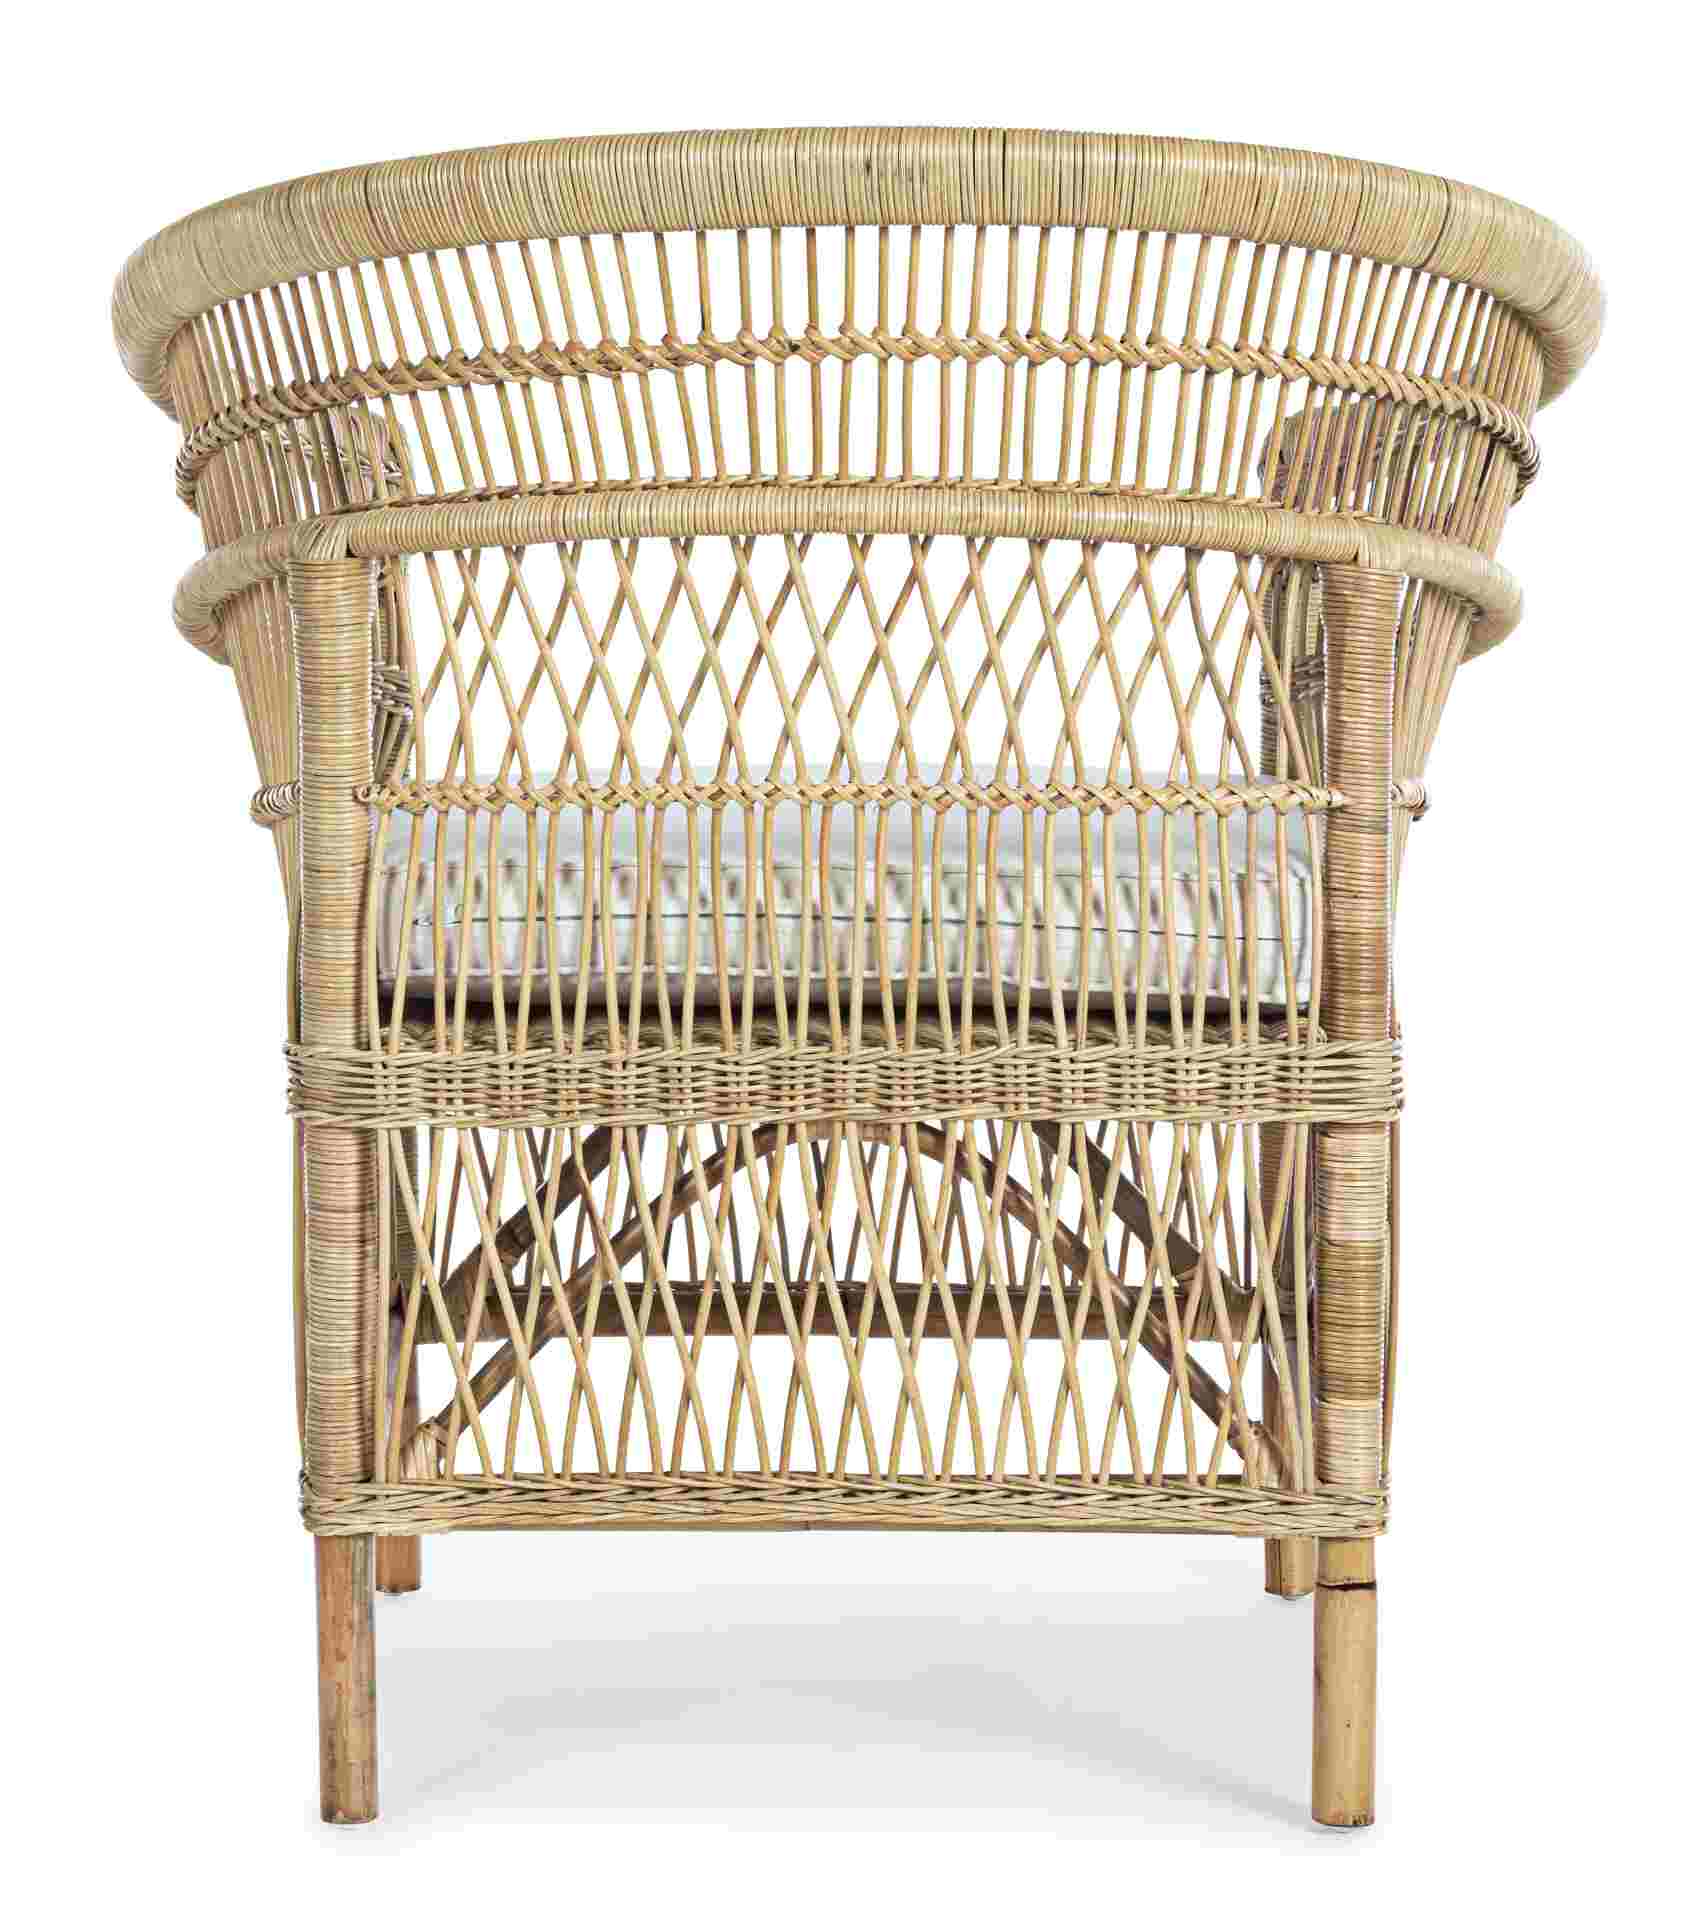 Der Sessel Josefina überzeugt mit seinem klassischen Design. Gefertigt wurde er aus Rattan, welches einen natürlichen Farbton besitzt. Das Gestell ist auch aus Rattan. Der Sessel besitzt eine Sitzhöhe von 41 cm. Die Breite beträgt 79 cm.